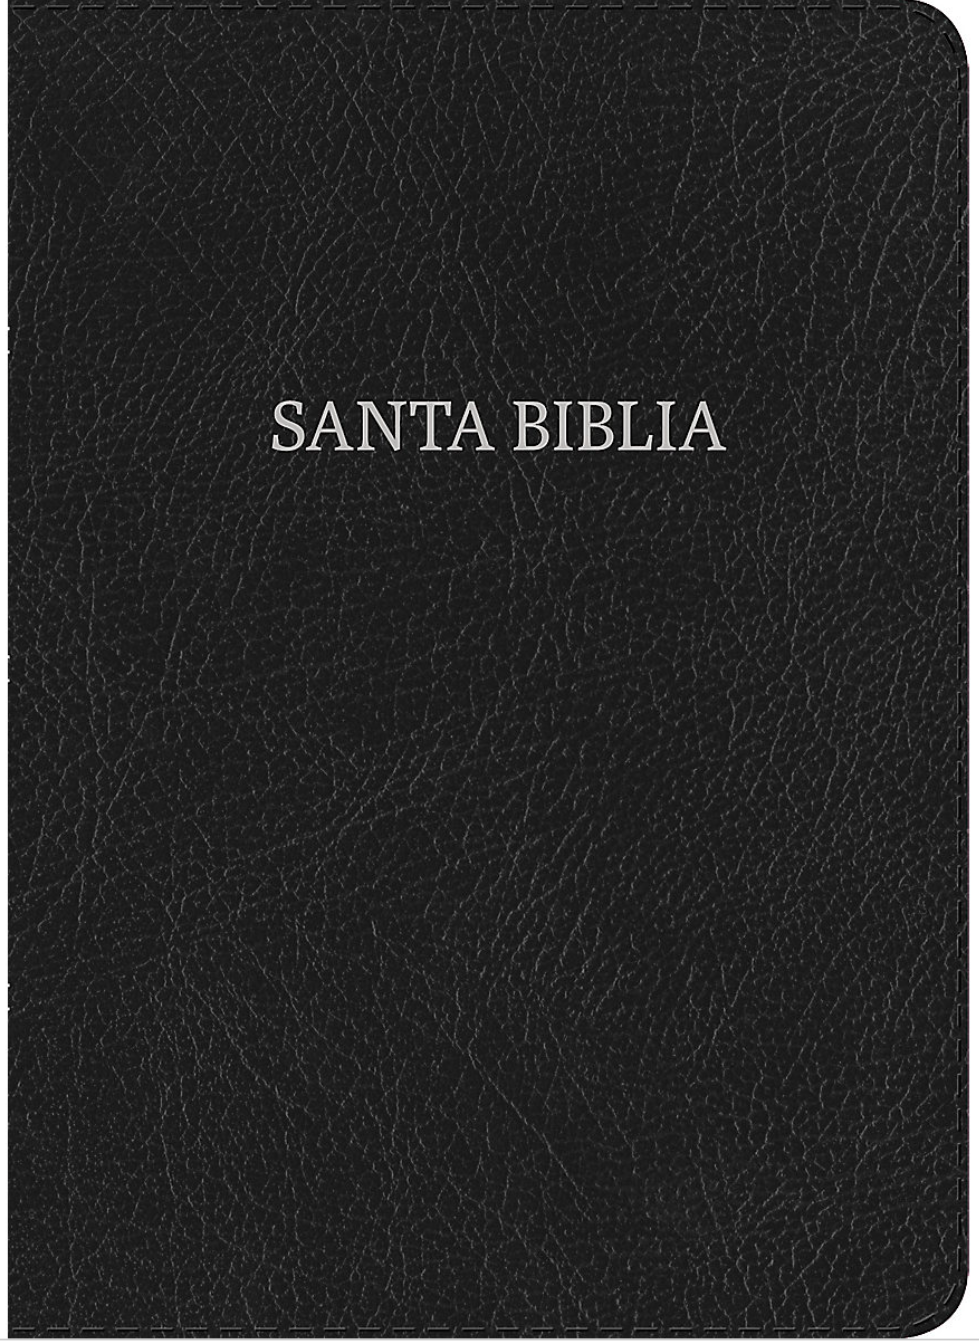 Biblia Letra Súper Gigante - RVR1960 - Negro, Piel Fabricada con Índice